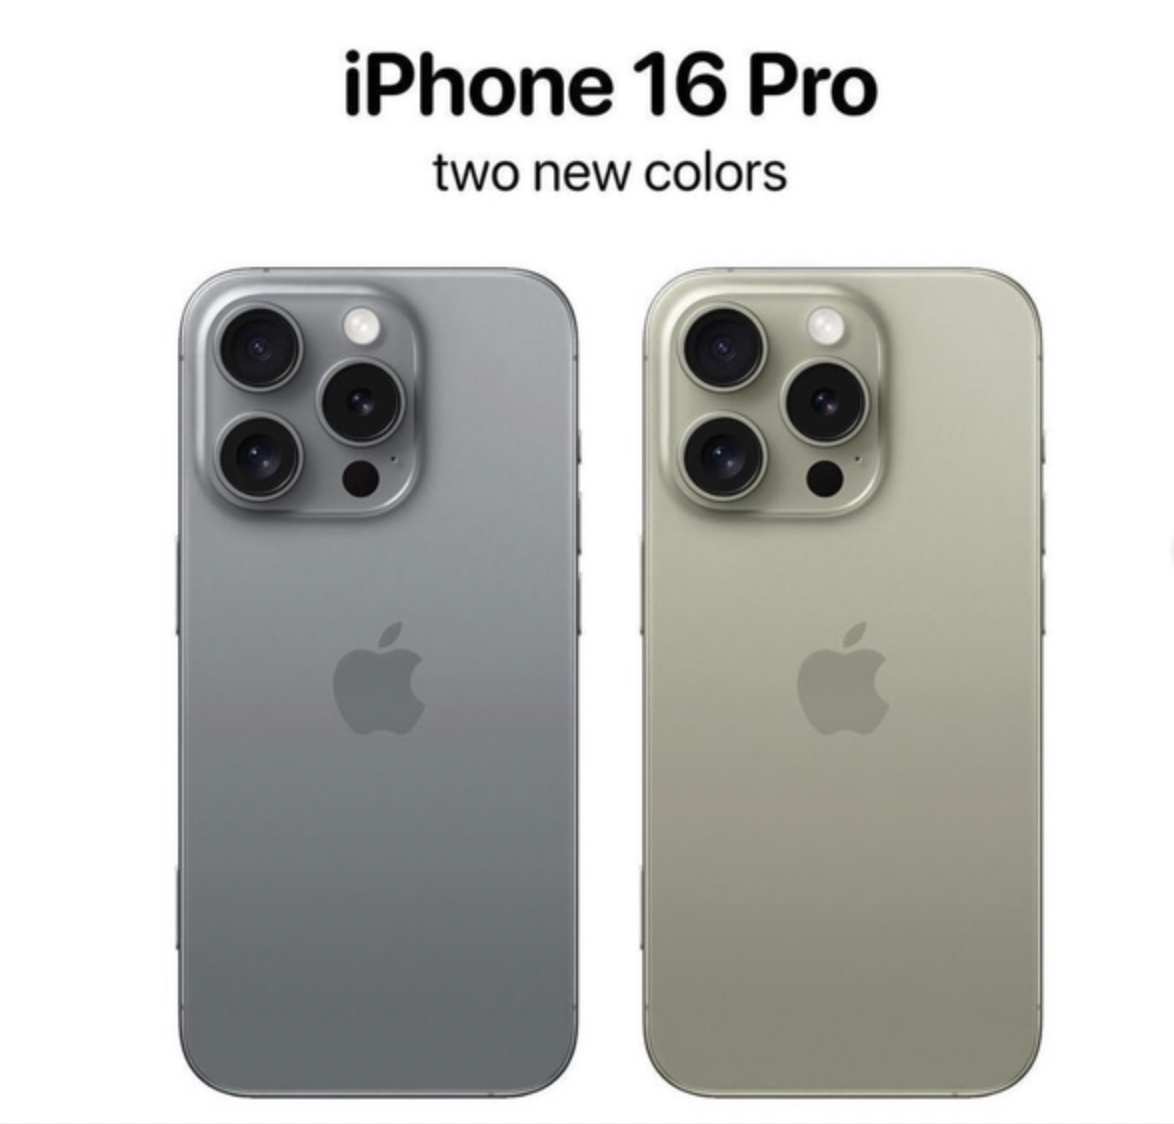 Theo Majin Bu, chuyên gia công nghệ thường đăng các tin đồn chính xác về Apple, iPhone 16 Pro sẽ có 2 tuỳ chọn màu Desert Titanium (vàng sa mạc) và Titanium Gray (xám xi măng).